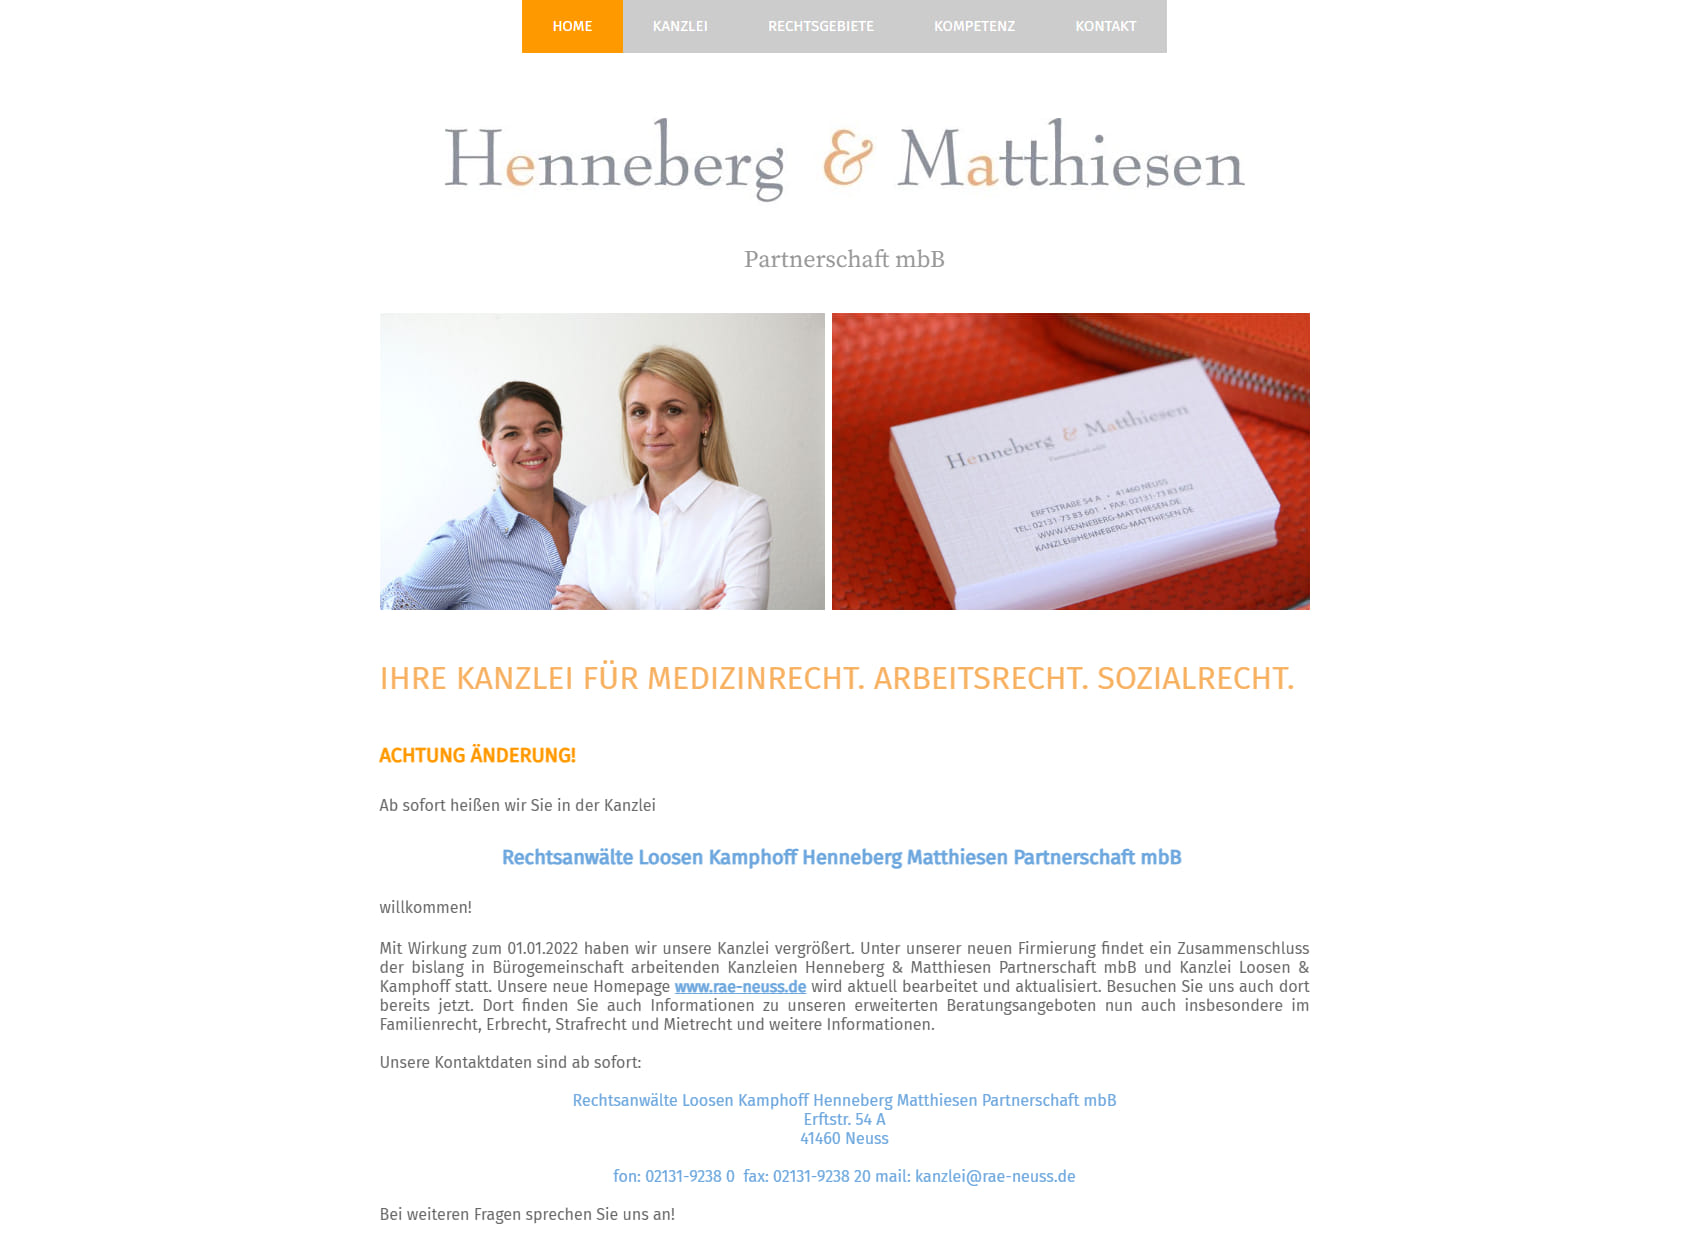 Kanzlei Henneberg & Matthiesen